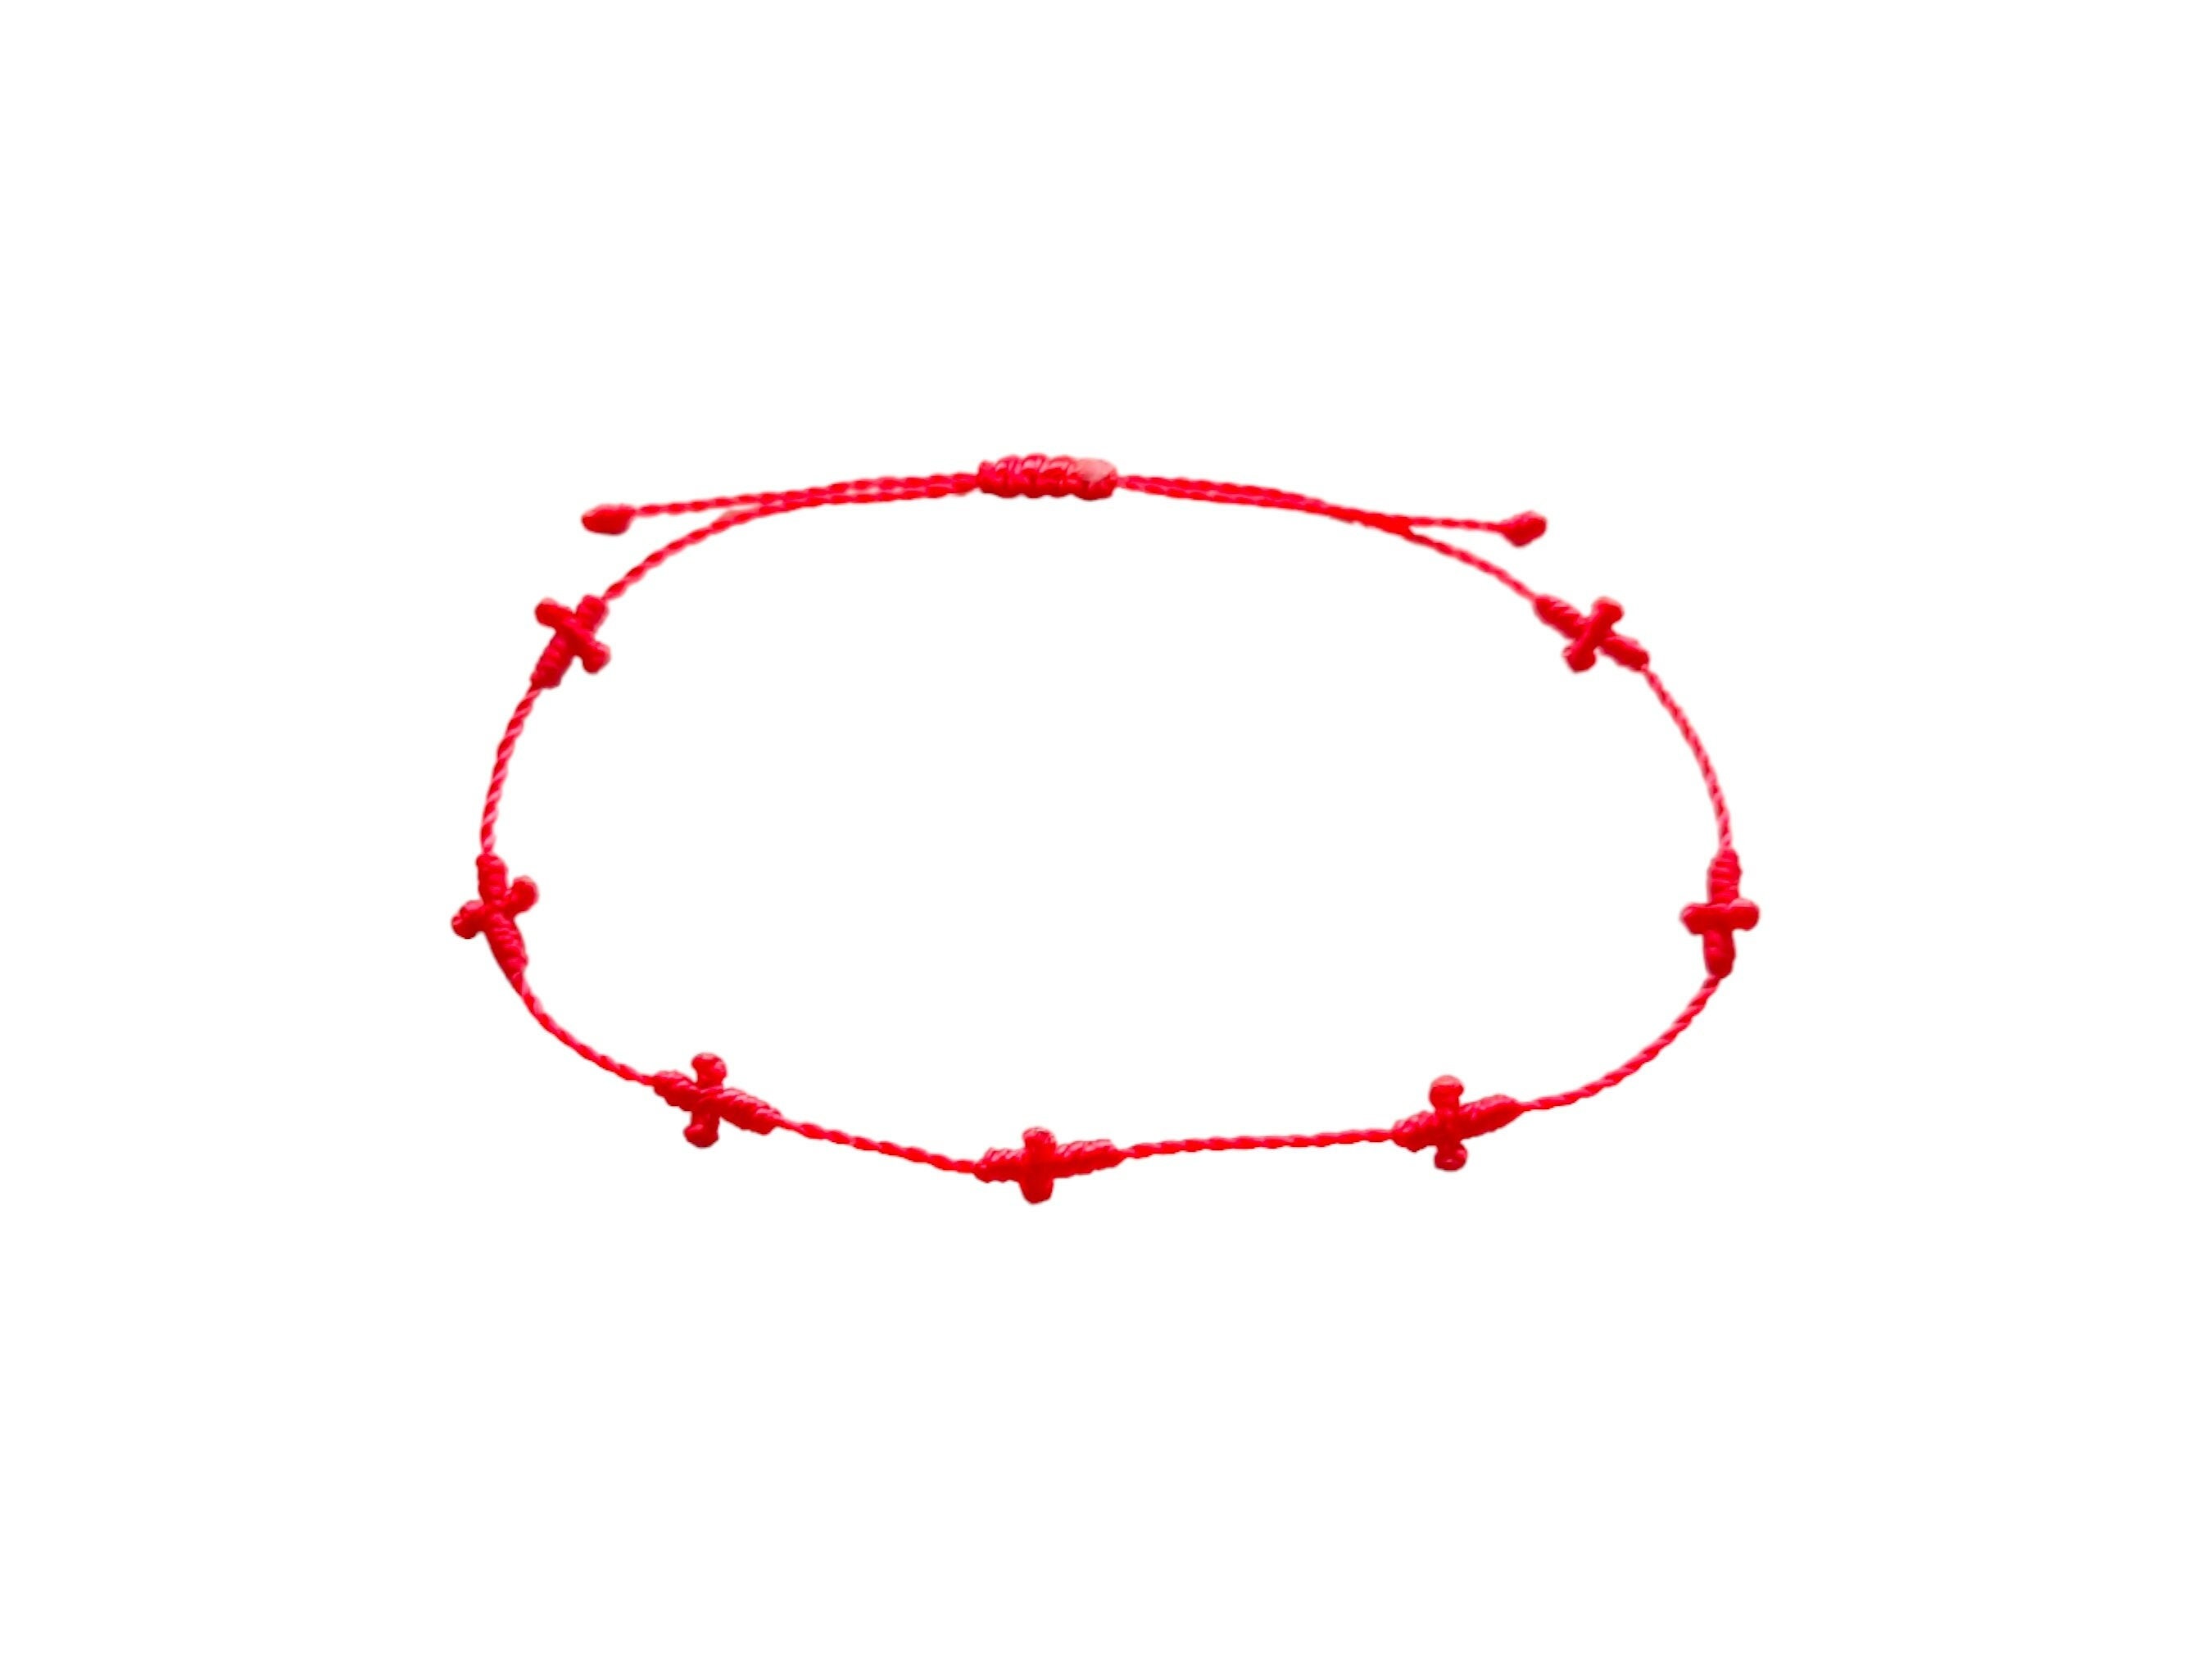 7 Knot Lucky Bracelets - Adjustable Red String Bracelets